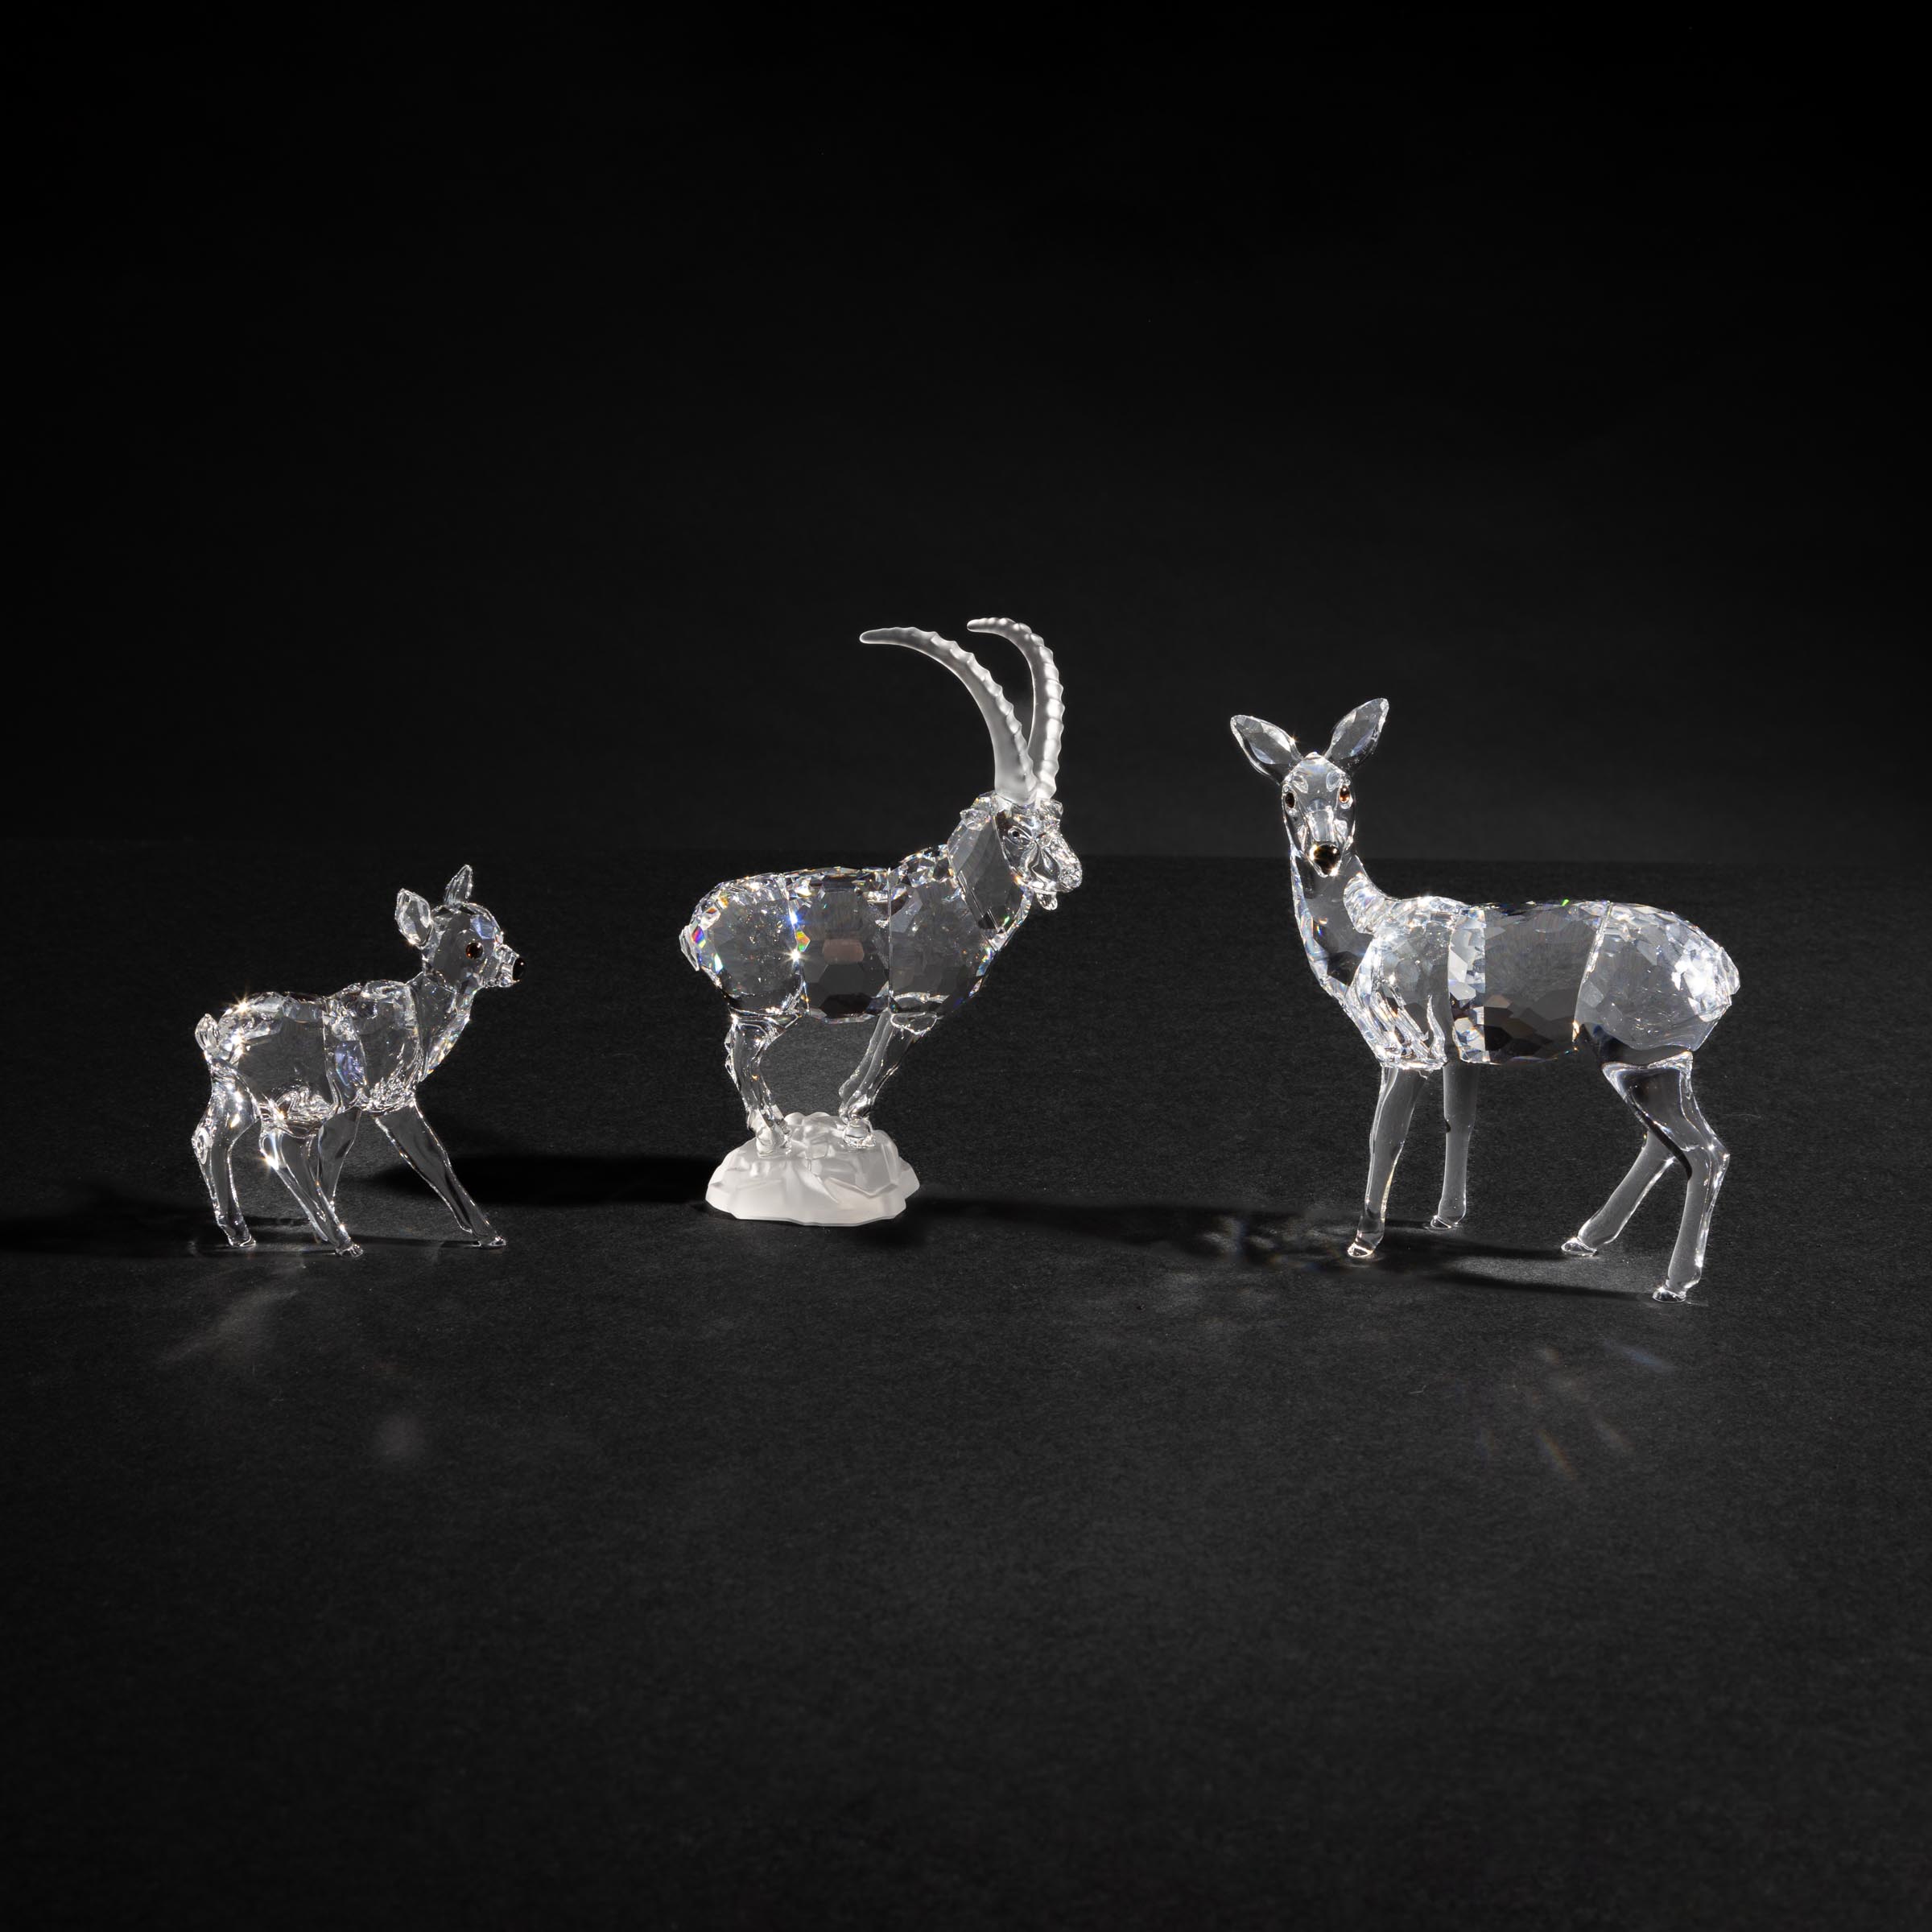 Three Swarovski Crystal Animals